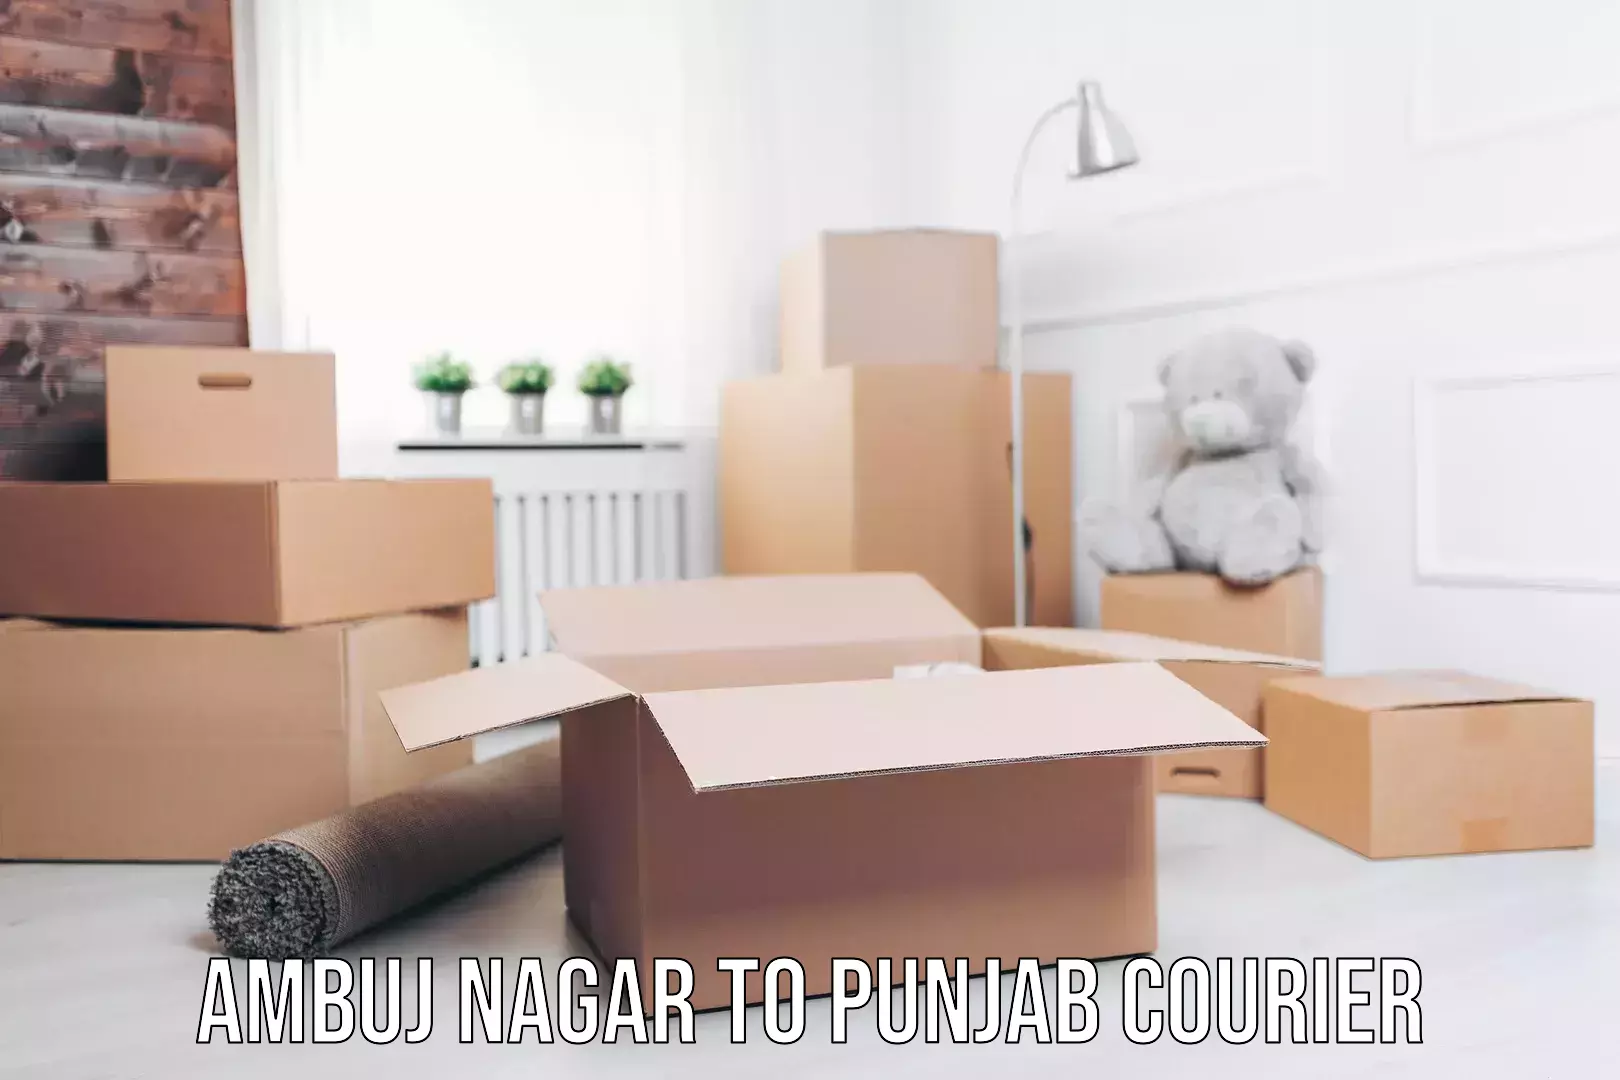 Expedited parcel delivery Ambuj Nagar to Punjab